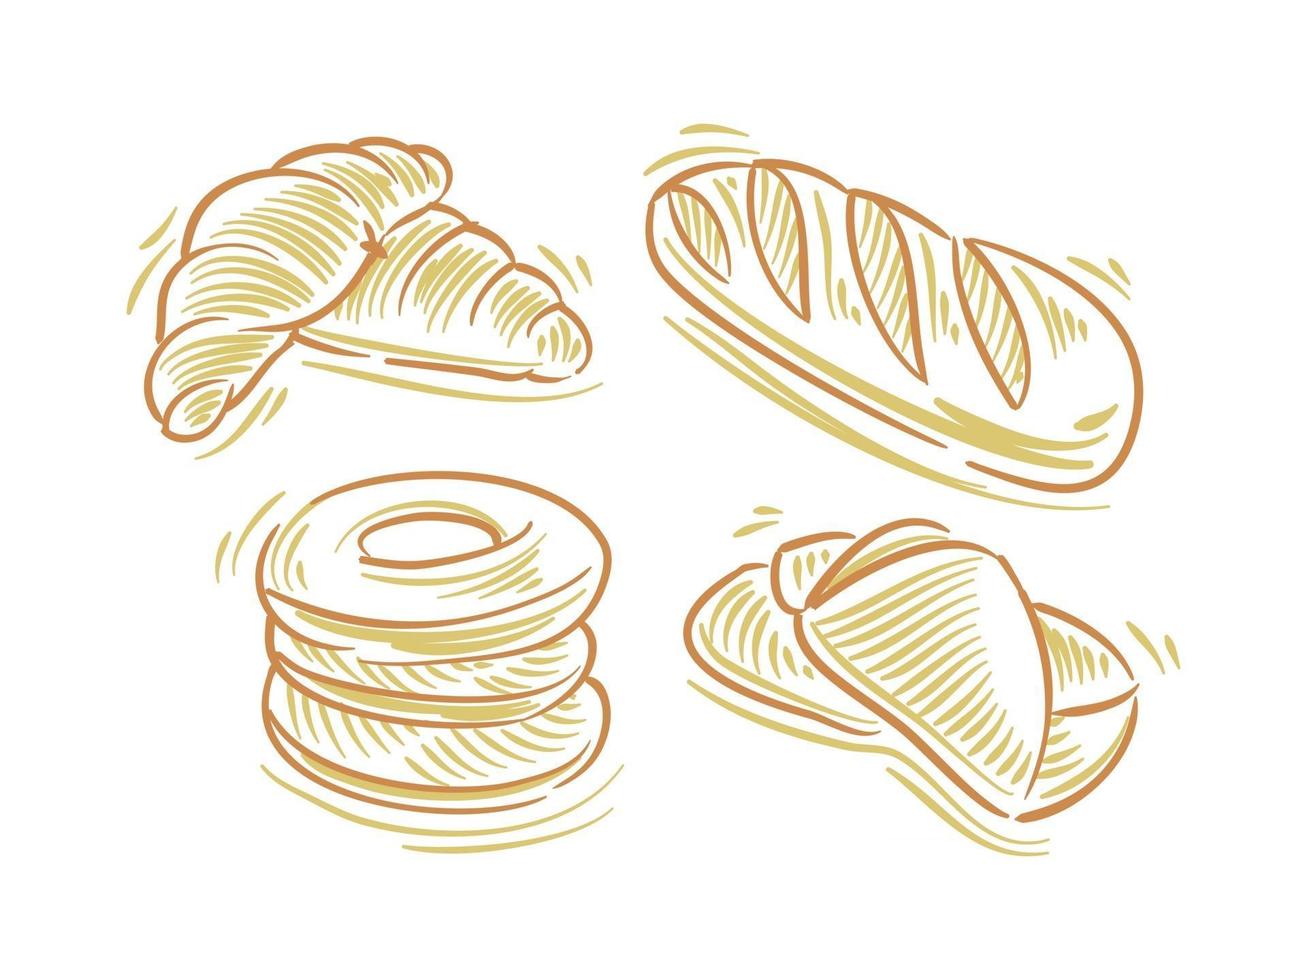 définir une illustration à plat de pain pour l'élément de marque et de logo vecteur